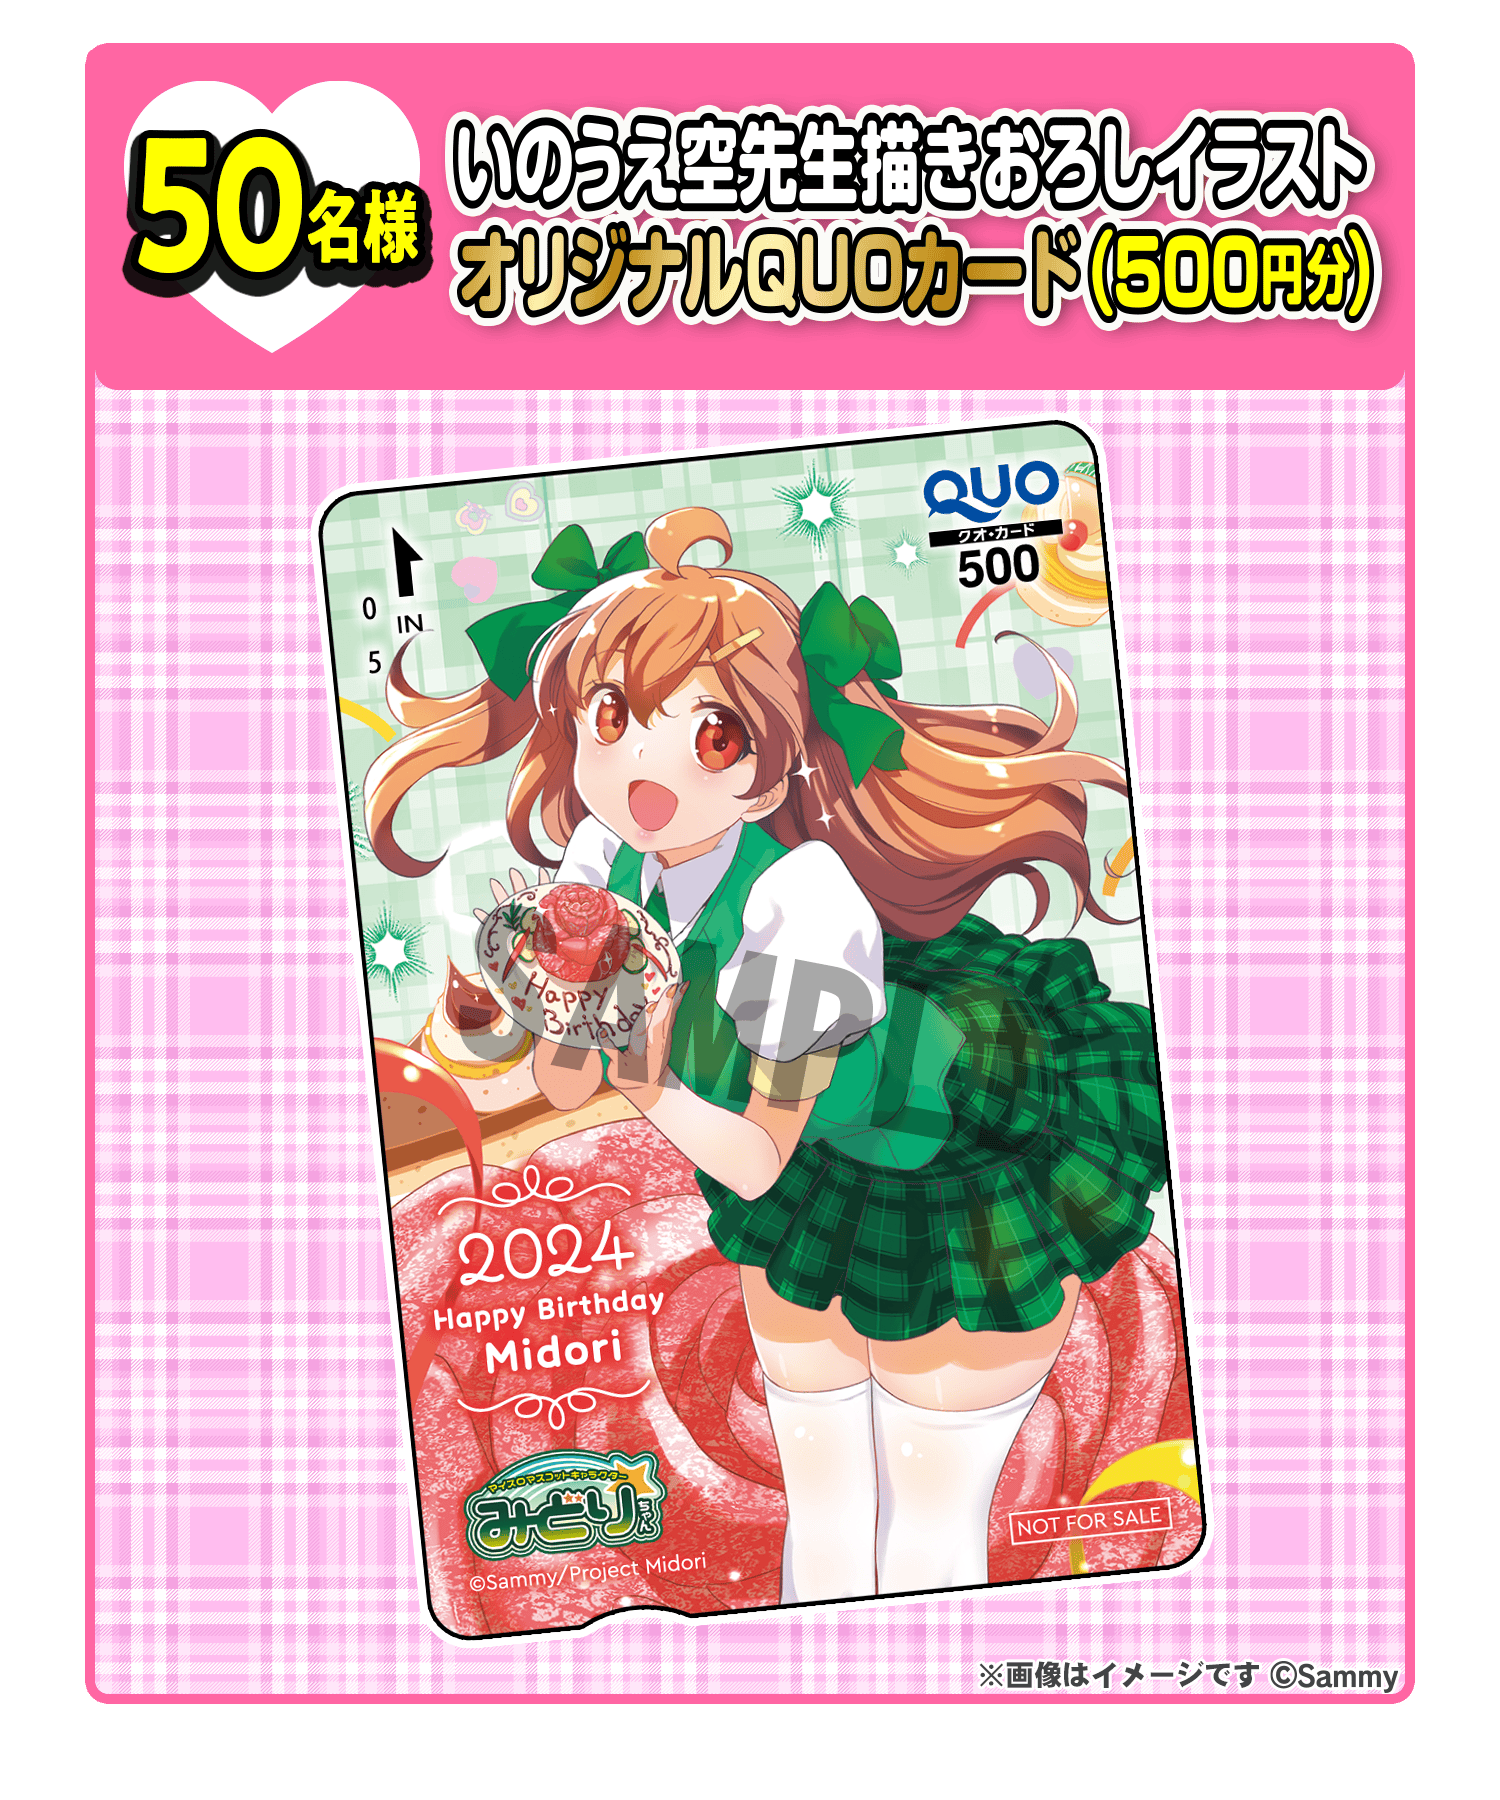 50名様 いのうえ空先生描きおろしイラストオリジナルQUOカード（500円分）